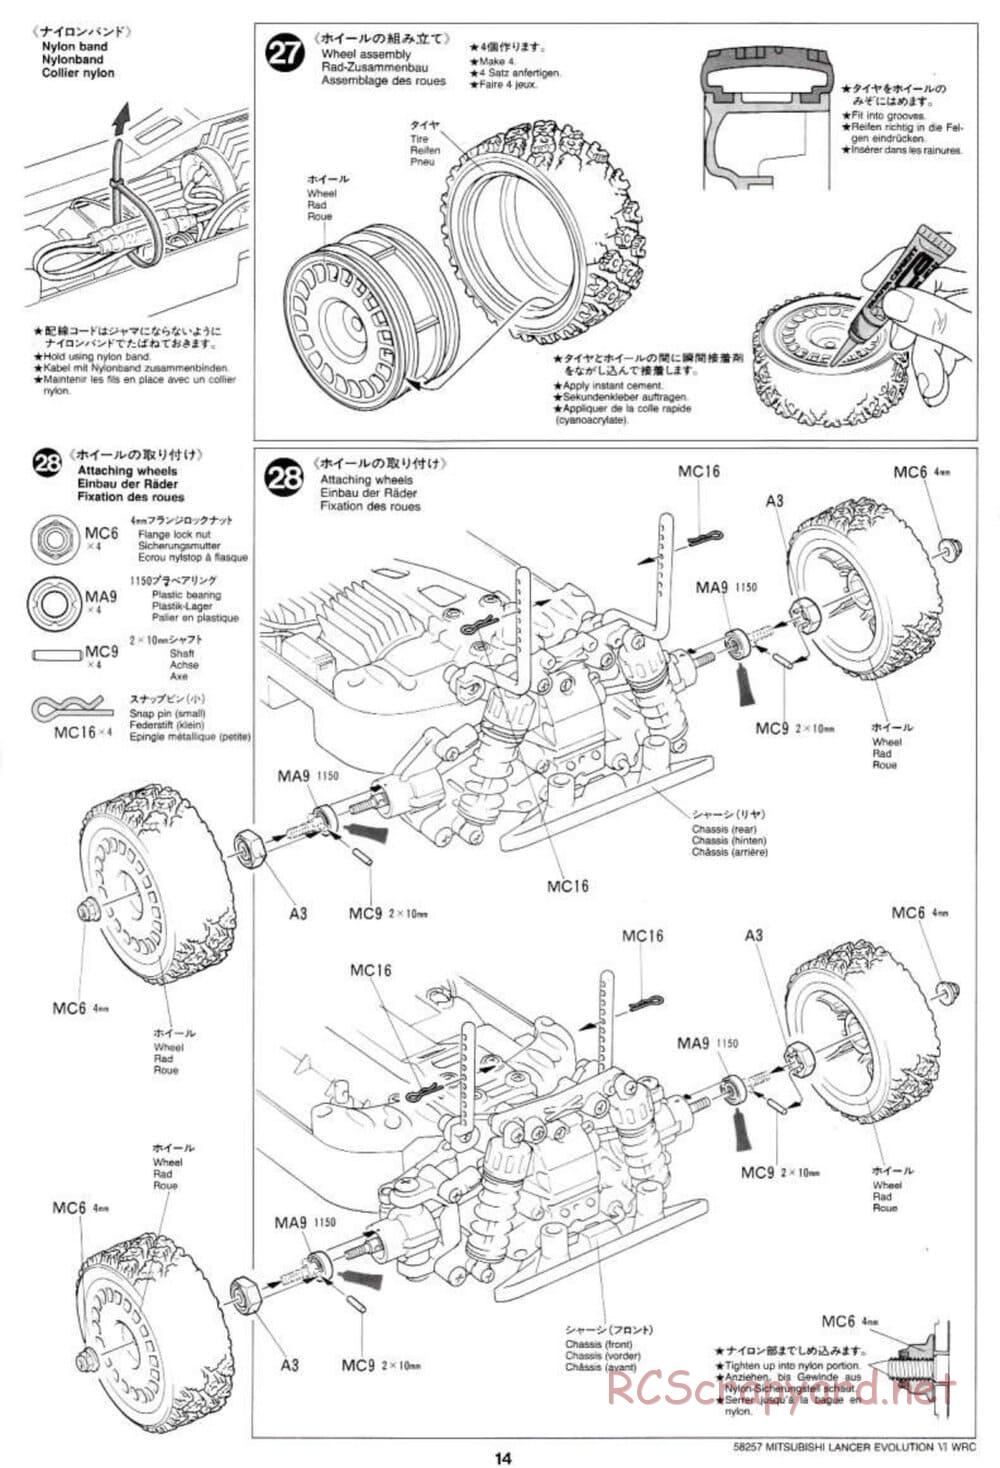 Tamiya - Mitsubishi Lancer Evolution VI WRC - TB-01 Chassis - Manual - Page 14